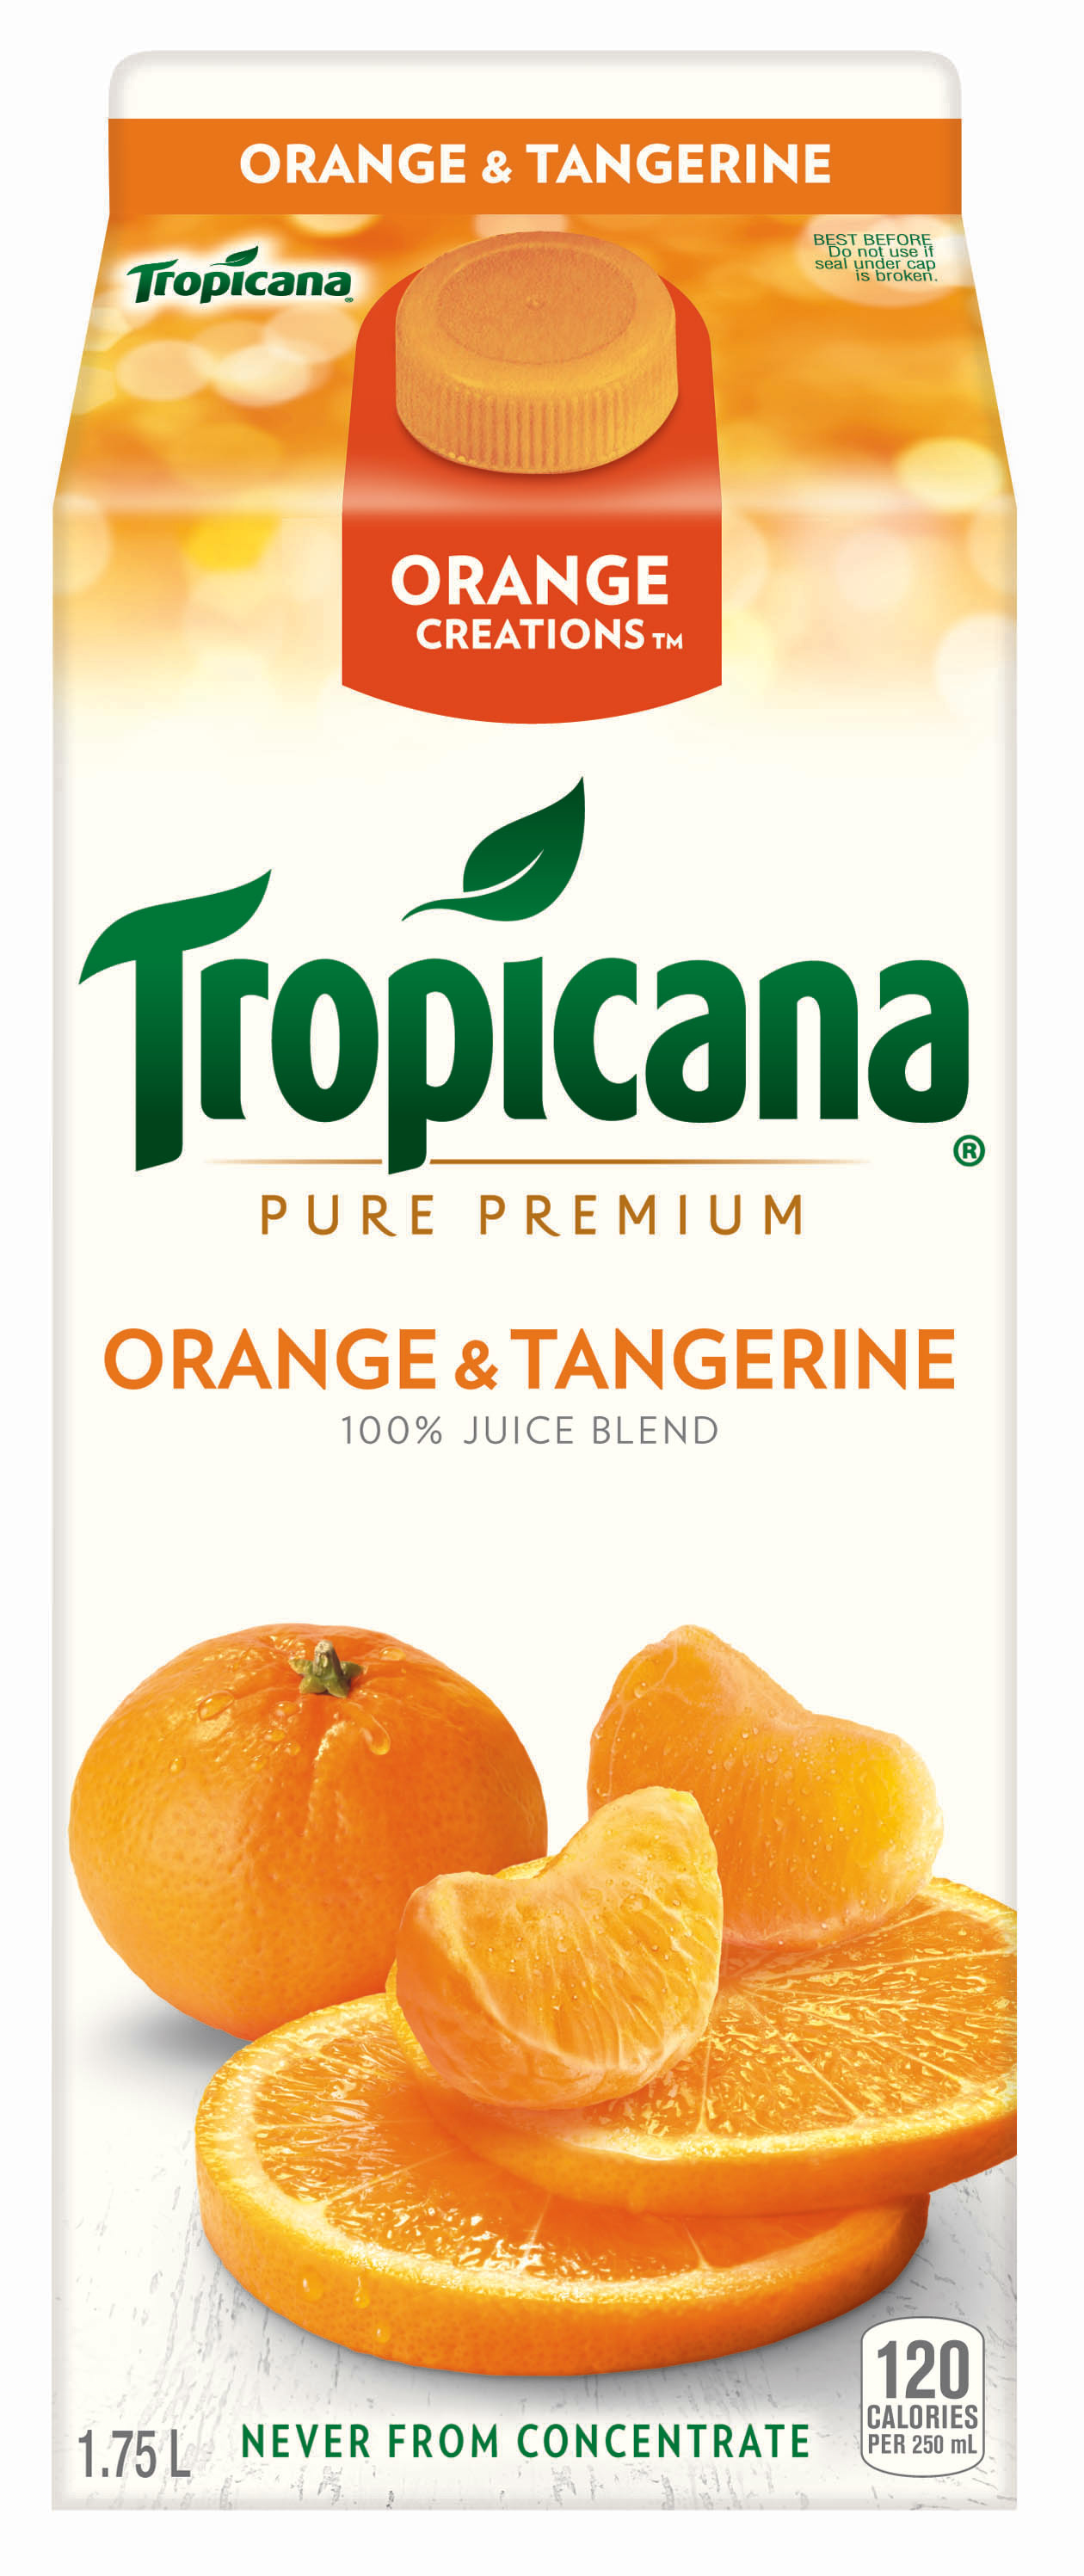 lost coast tangerine calories